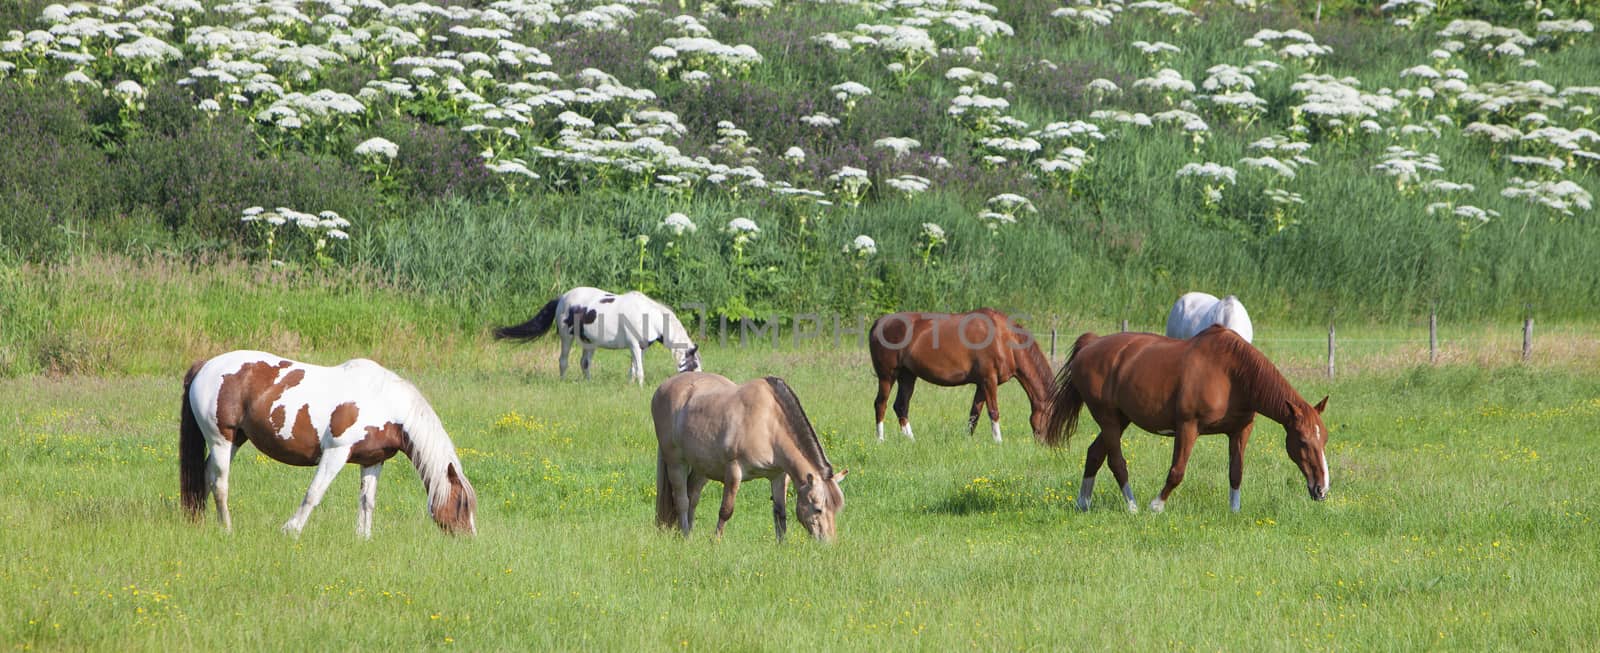 horses graze in green meadow near flowers in holland by ahavelaar